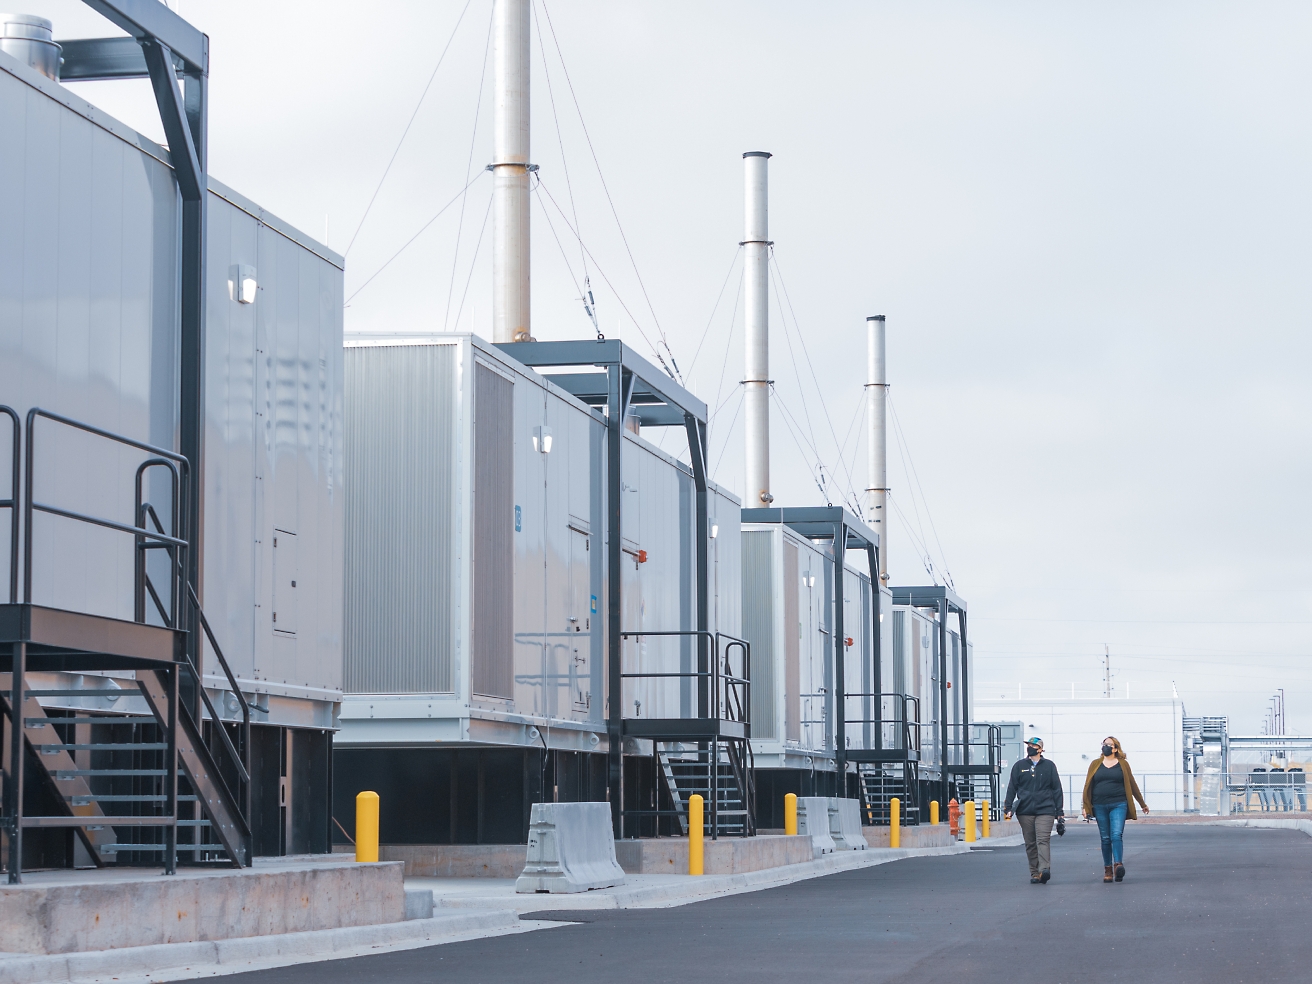 Twee personen die langs een rij industriële containers lopen, er zijn hoge schoorstenen van een installatie te zien en de lucht is bewolkt.